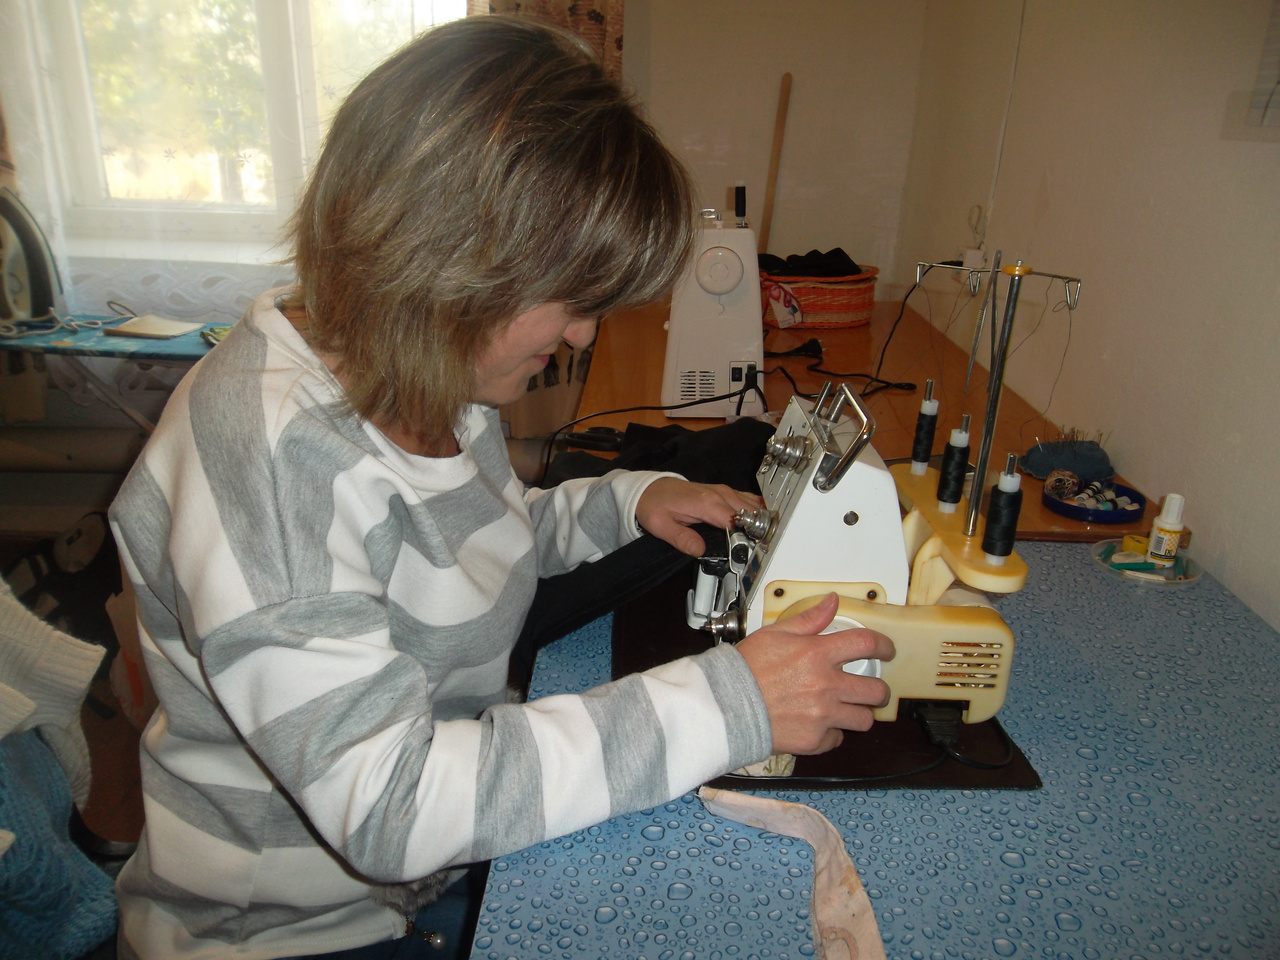 Жительница Агаповского района Анна Головачева воспользовалась бесплатной помощью от государства на регистрацию ИП и открыла ателье по пошиву и ремонту одежды.